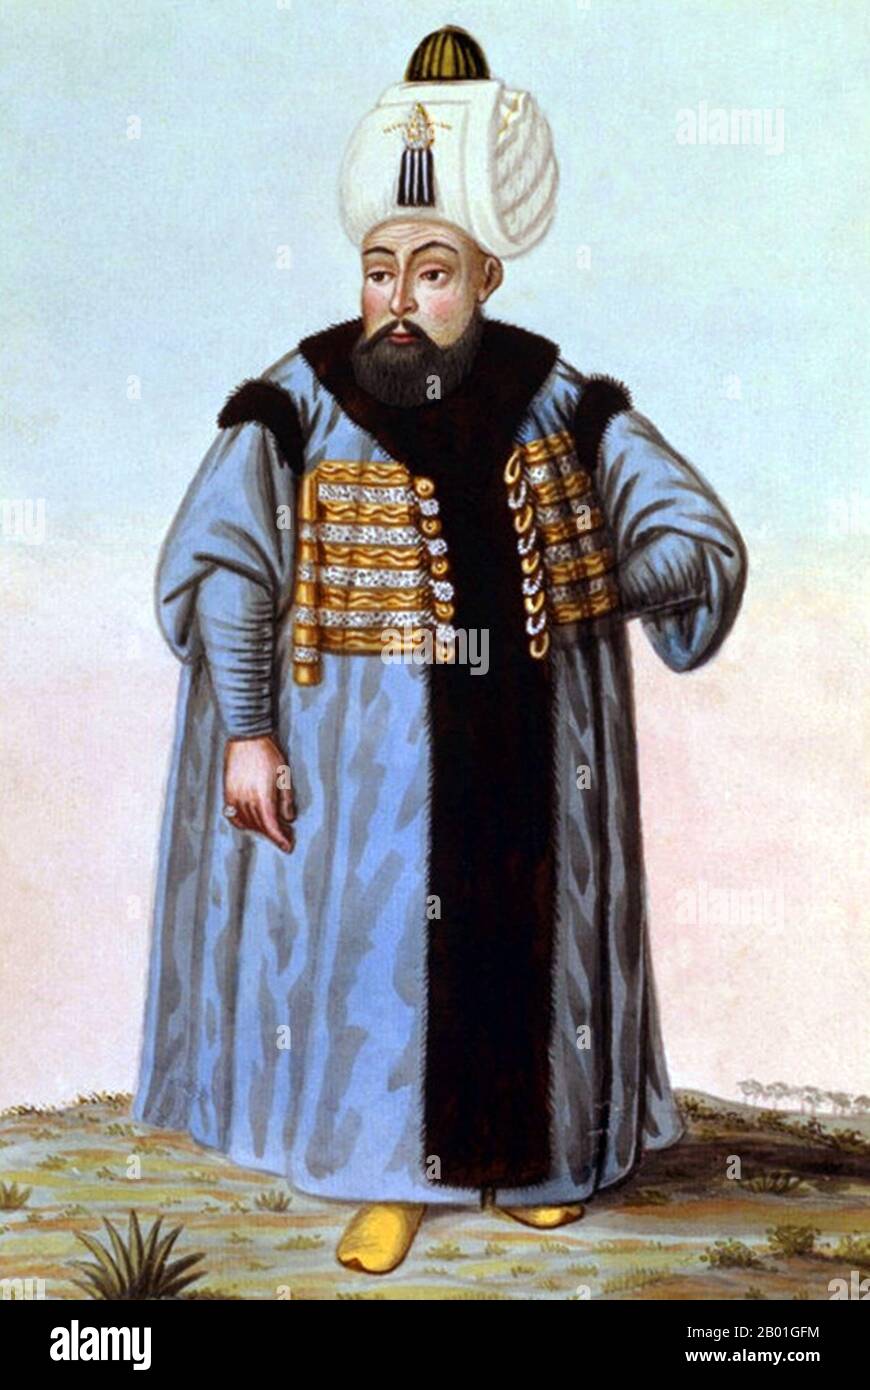 Türkei: Selim II (28. Mai 1524 - 15. Dezember 1574), Sultan des Osmanischen Reiches. Aquarellmalerei von John Young (1755-1825), 1815. Selim II. Wurde in Istanbul geboren, Sohn von Suleiman dem herrlichen und seiner viertliebsten ruthenischen Frau Hürrem Sultan (Roxelana). Die Militärexpeditionen in Hejaz und Jemen waren erfolgreich, aber seine Eroberung Zyperns im Jahr 1571 führte zu der katastrophalen Niederlage der Marine gegen Spanien und Venedig in der Schlacht von Lepanto im selben Jahr und befreite das Mittelmeer von Korsaren. Die zerstörten Flotten des Imperiums wurden jedoch in nur sechs Monaten wieder hergestellt. Stockfoto